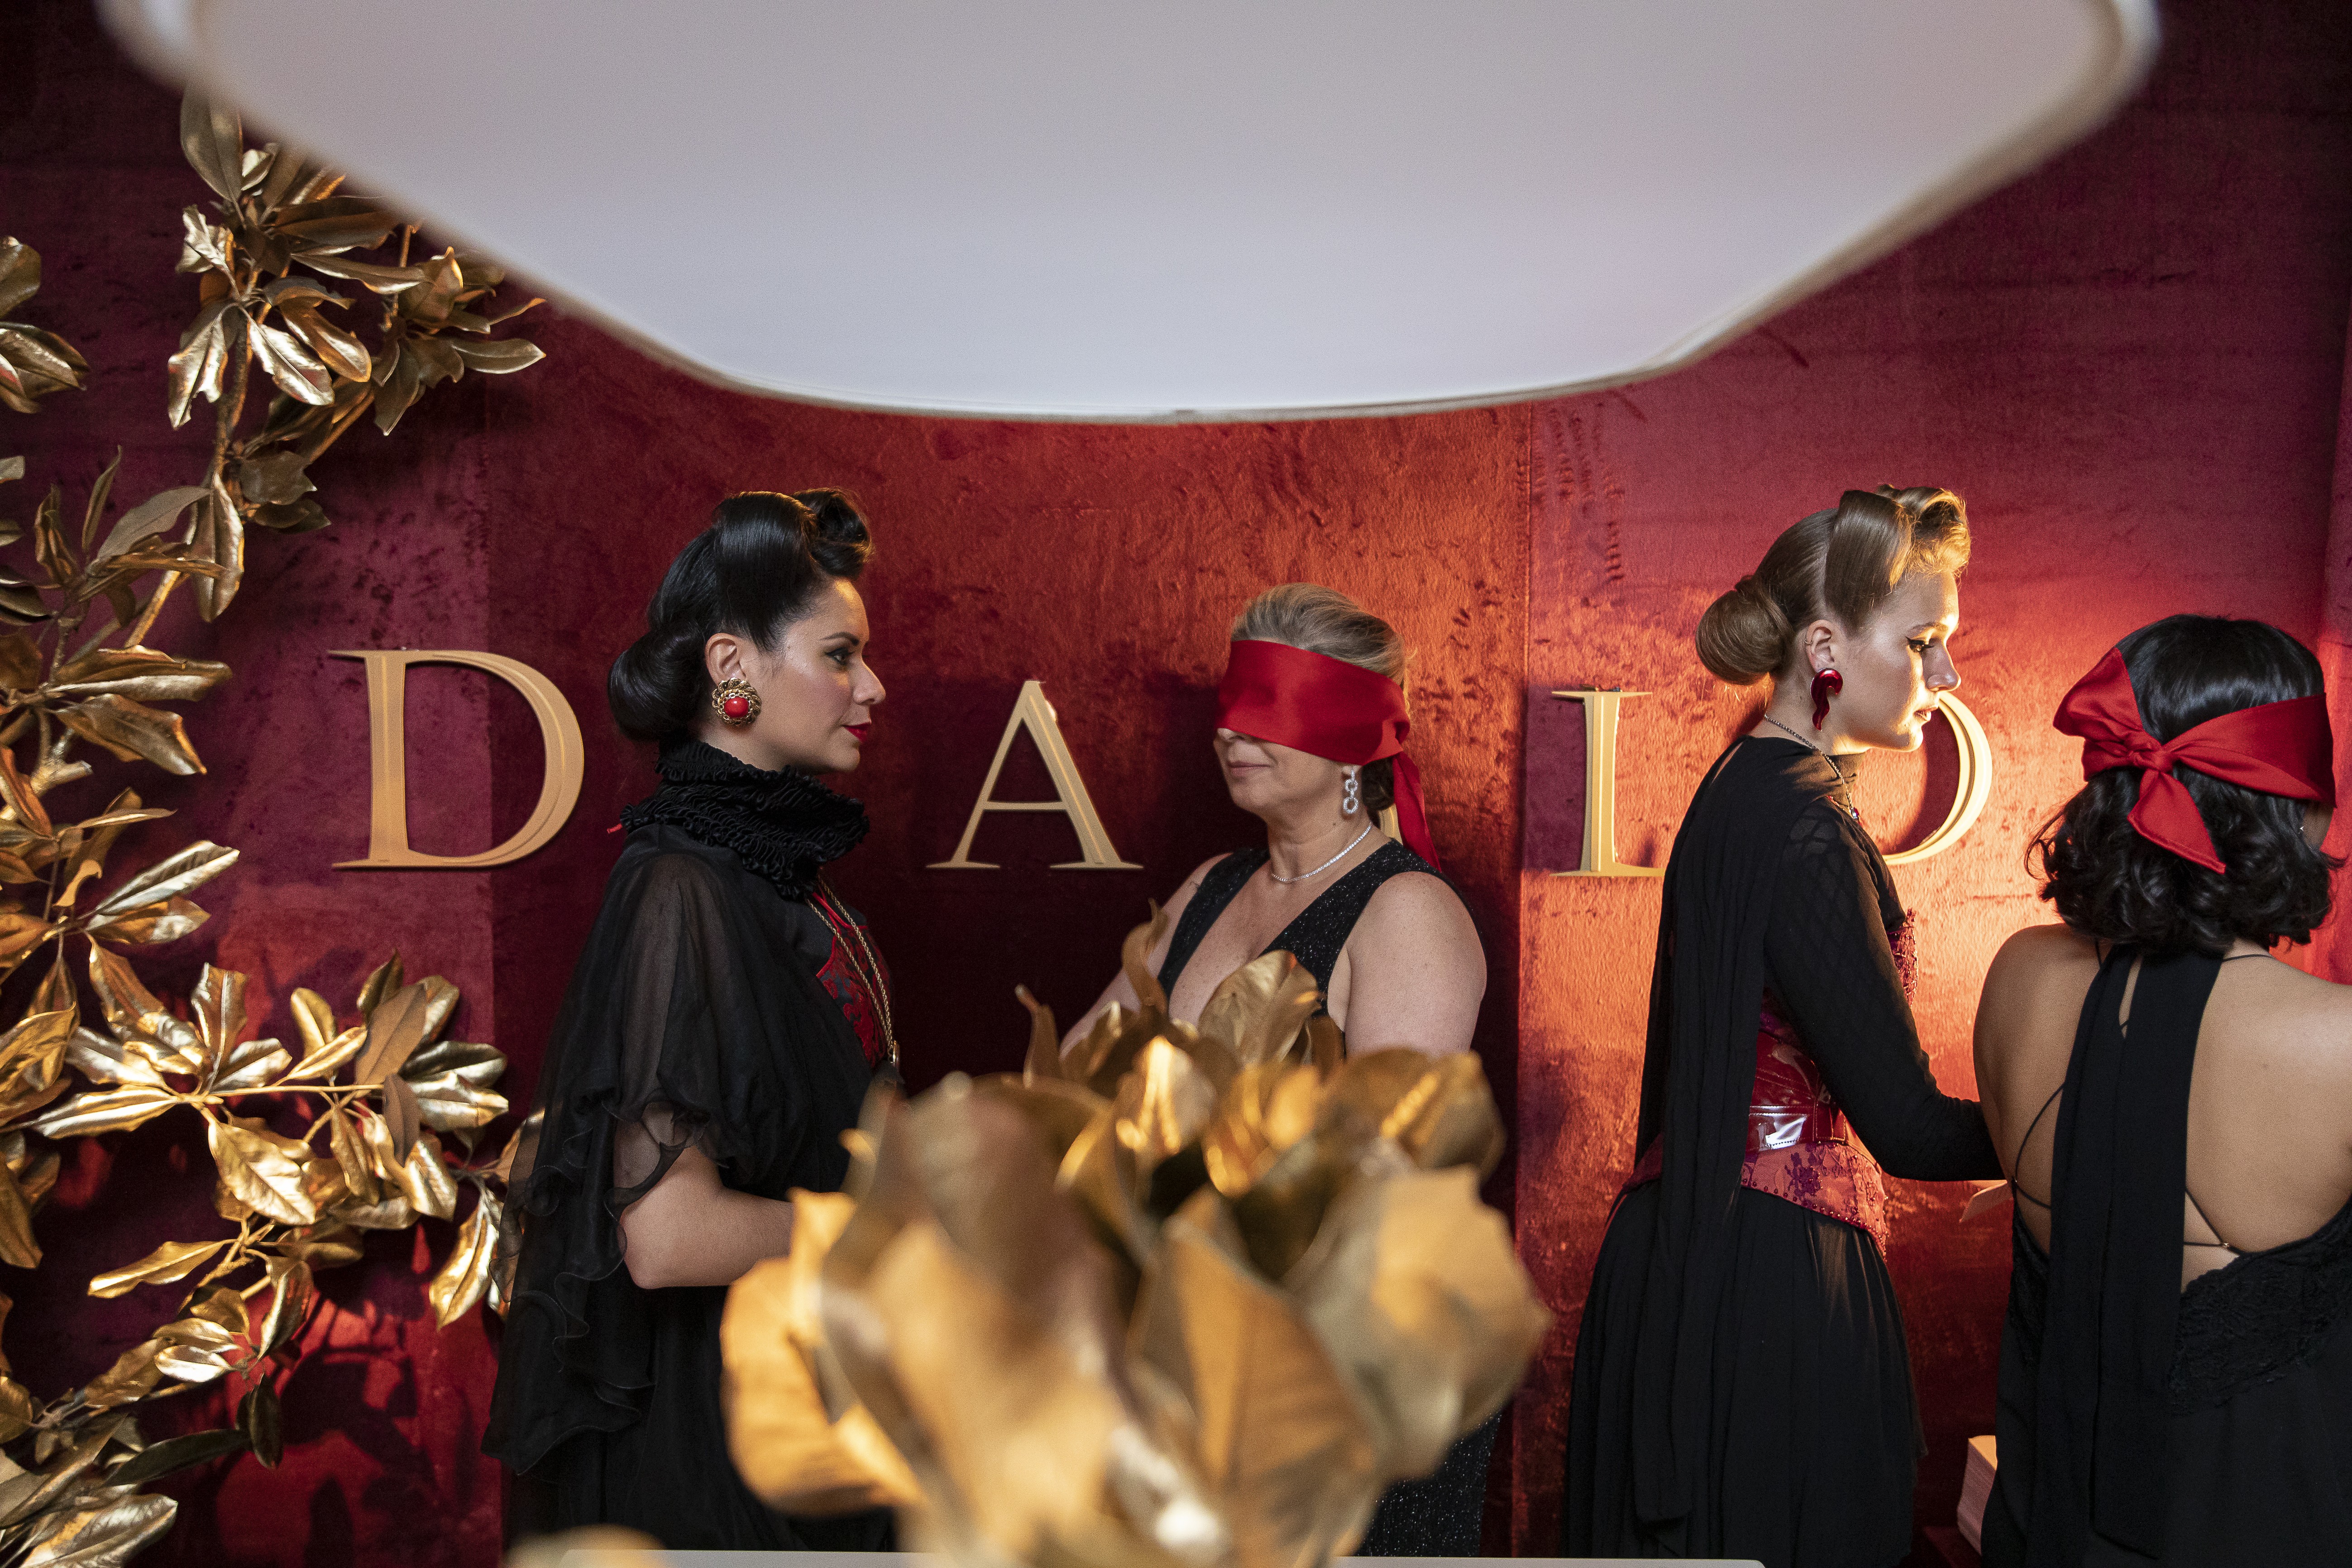  “Aceita fazer um pacto com o extraordinário?”, perguntavam as promoters na entrada do baile (Foto: Leo Orestes)